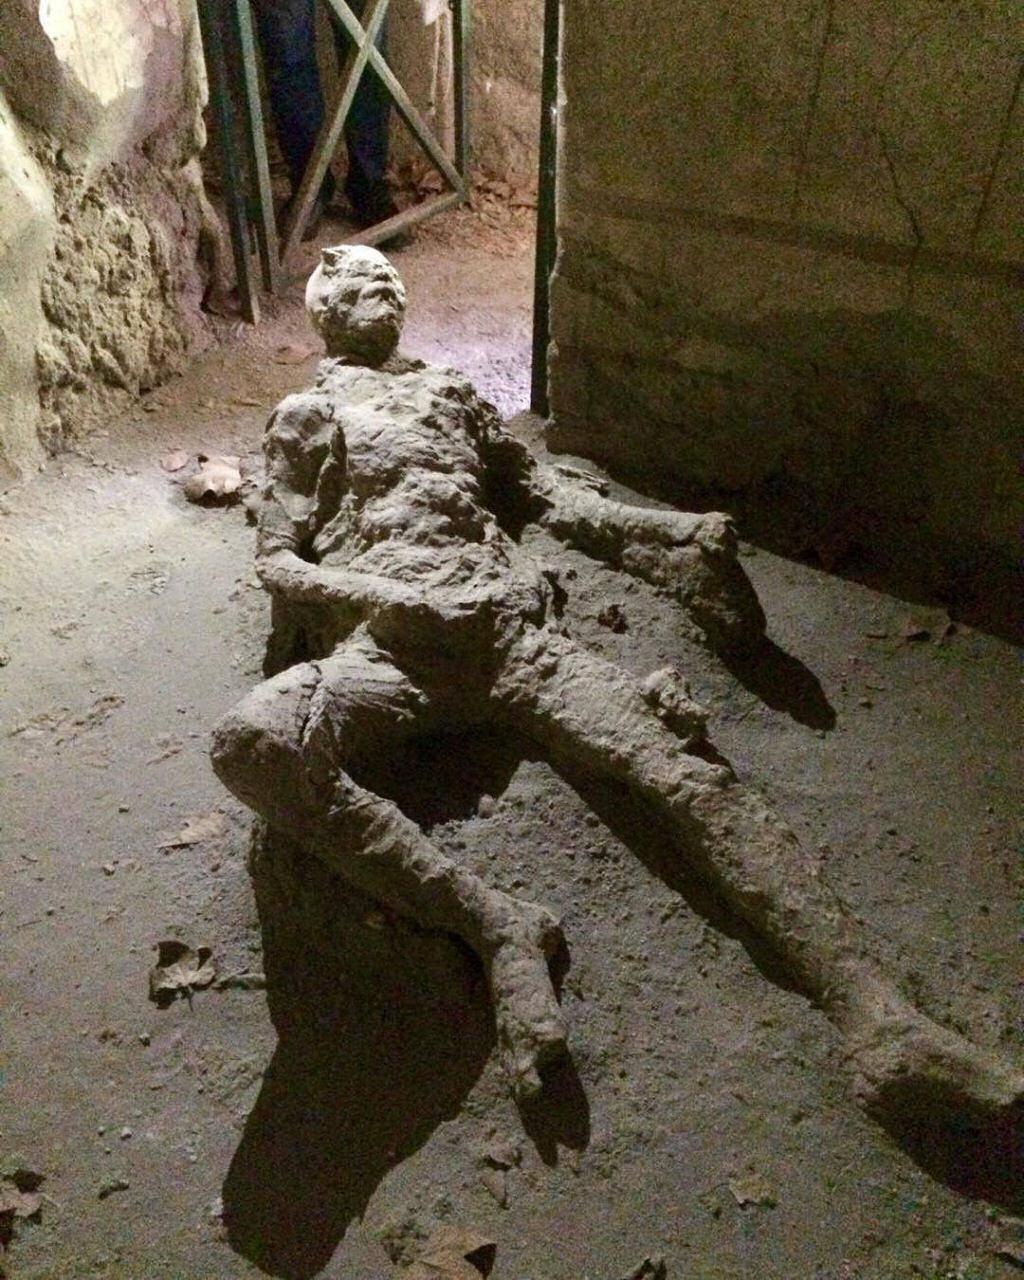 Morreu fazendo o que gostava? Viraliza a imagem de um homem petrificado em Pompeia